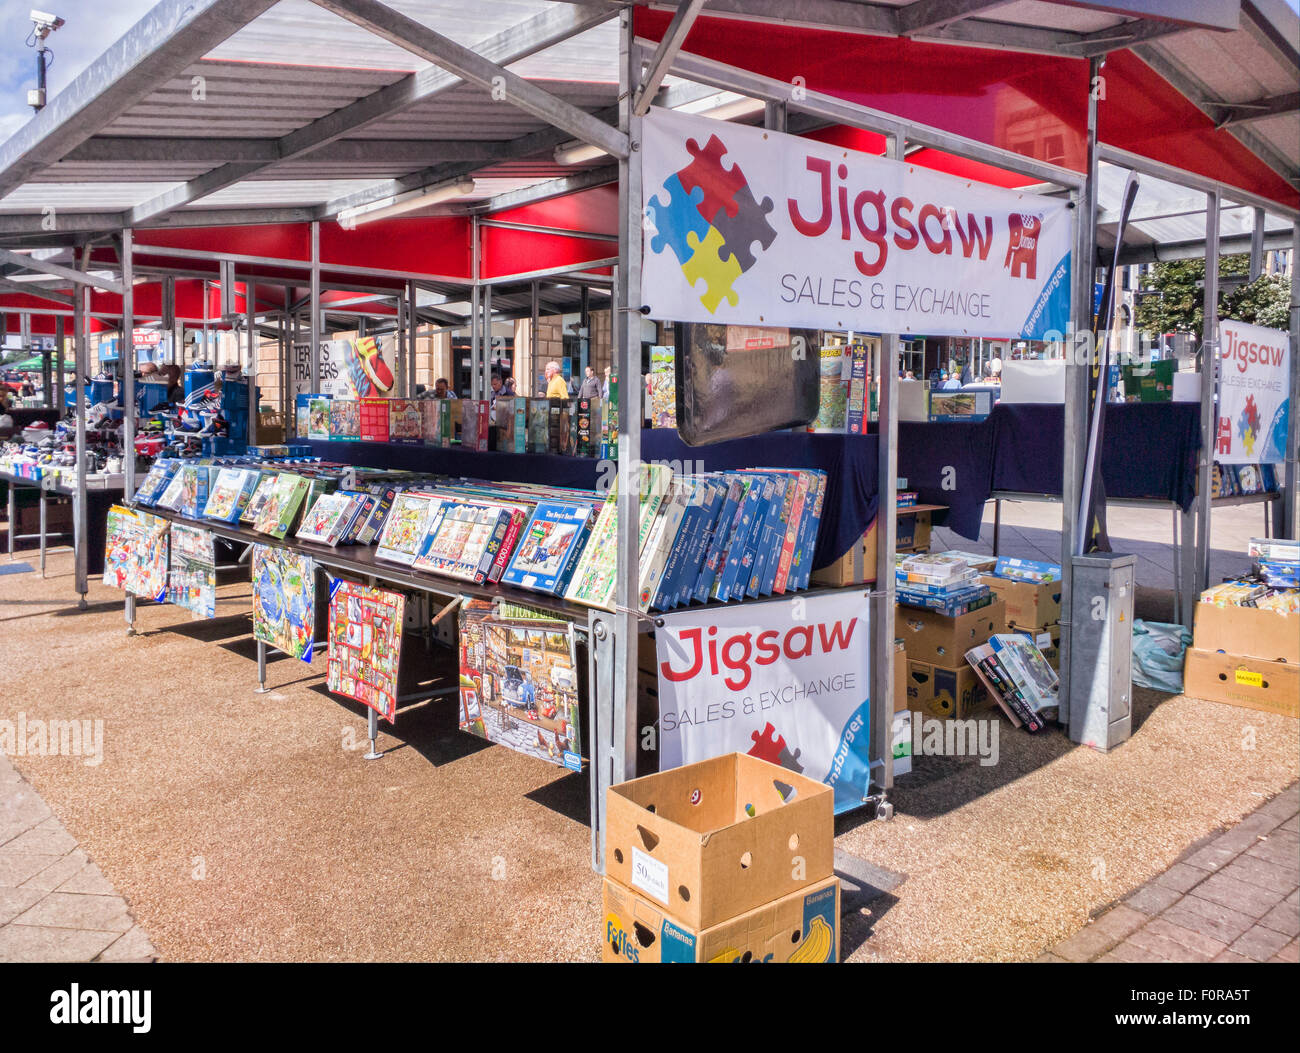 L'étal concessionnaire Jigsaw dans un marché de rue dans la région de Barnsley, dans le Yorkshire du Sud. Banque D'Images